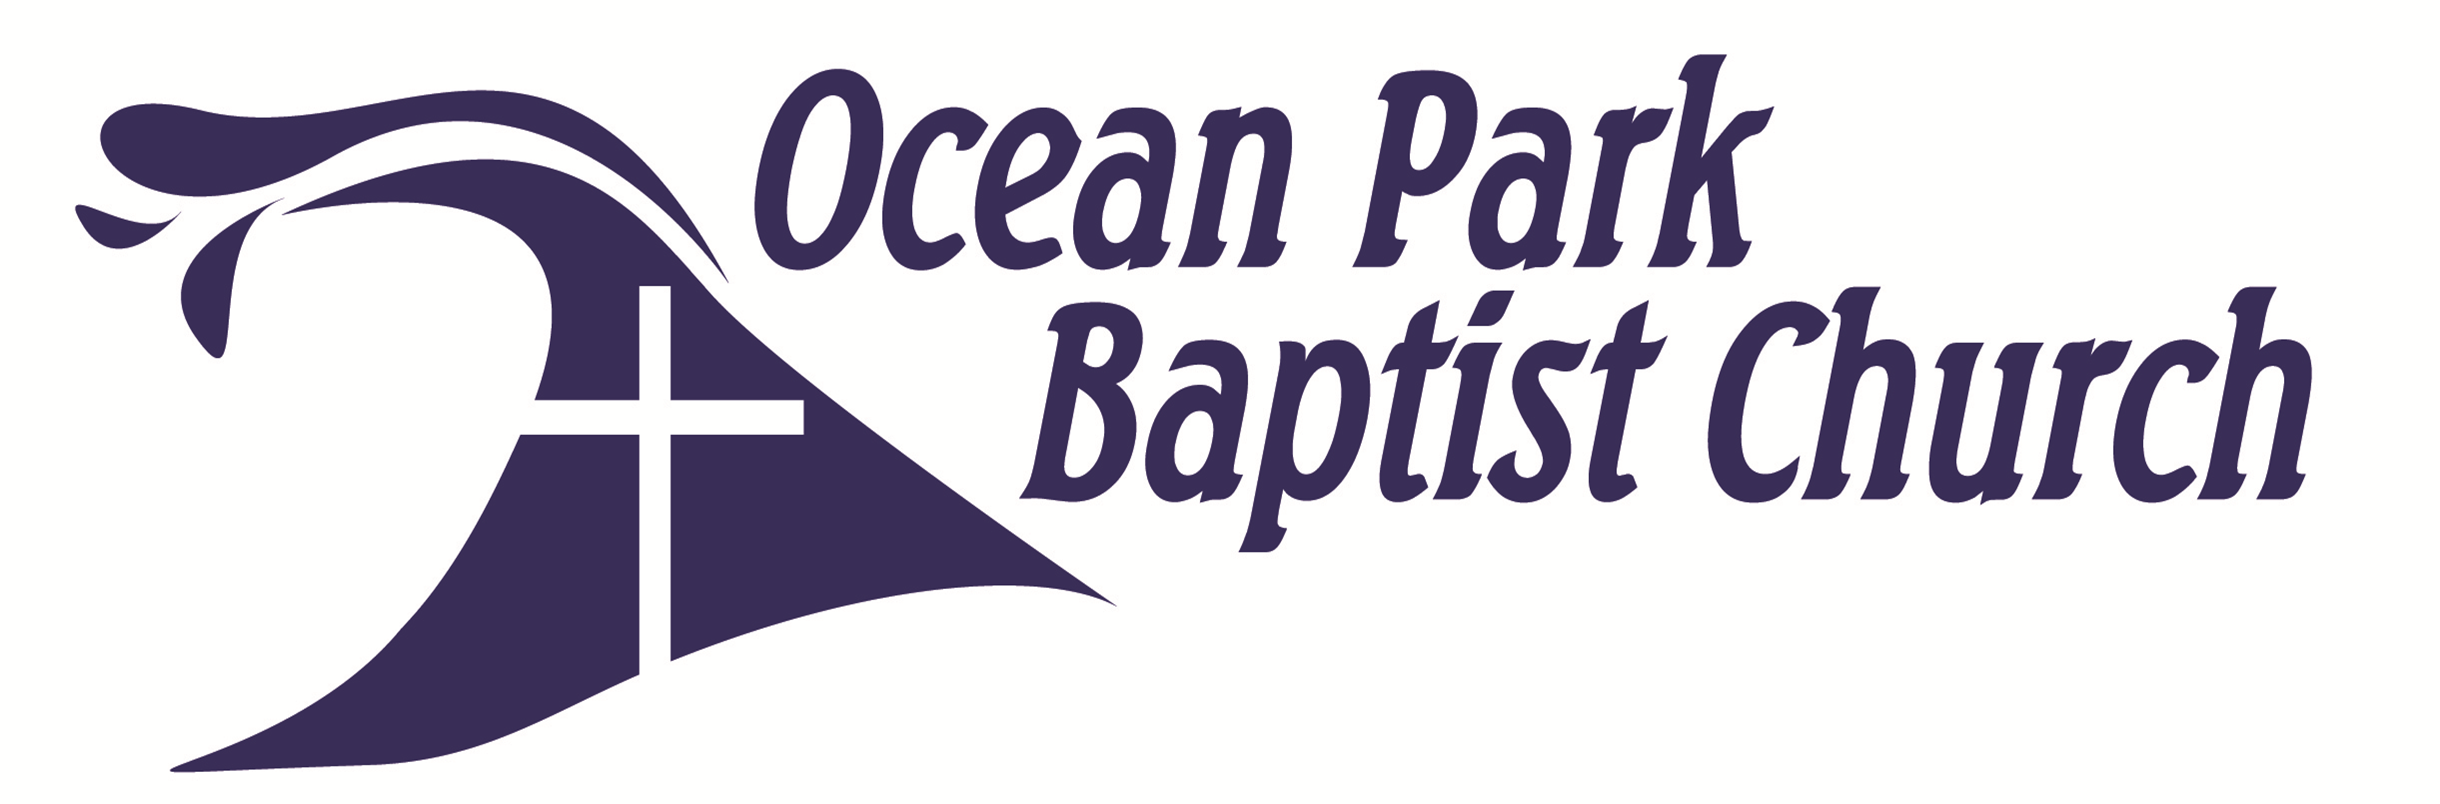 Ocean Park Baptist Church